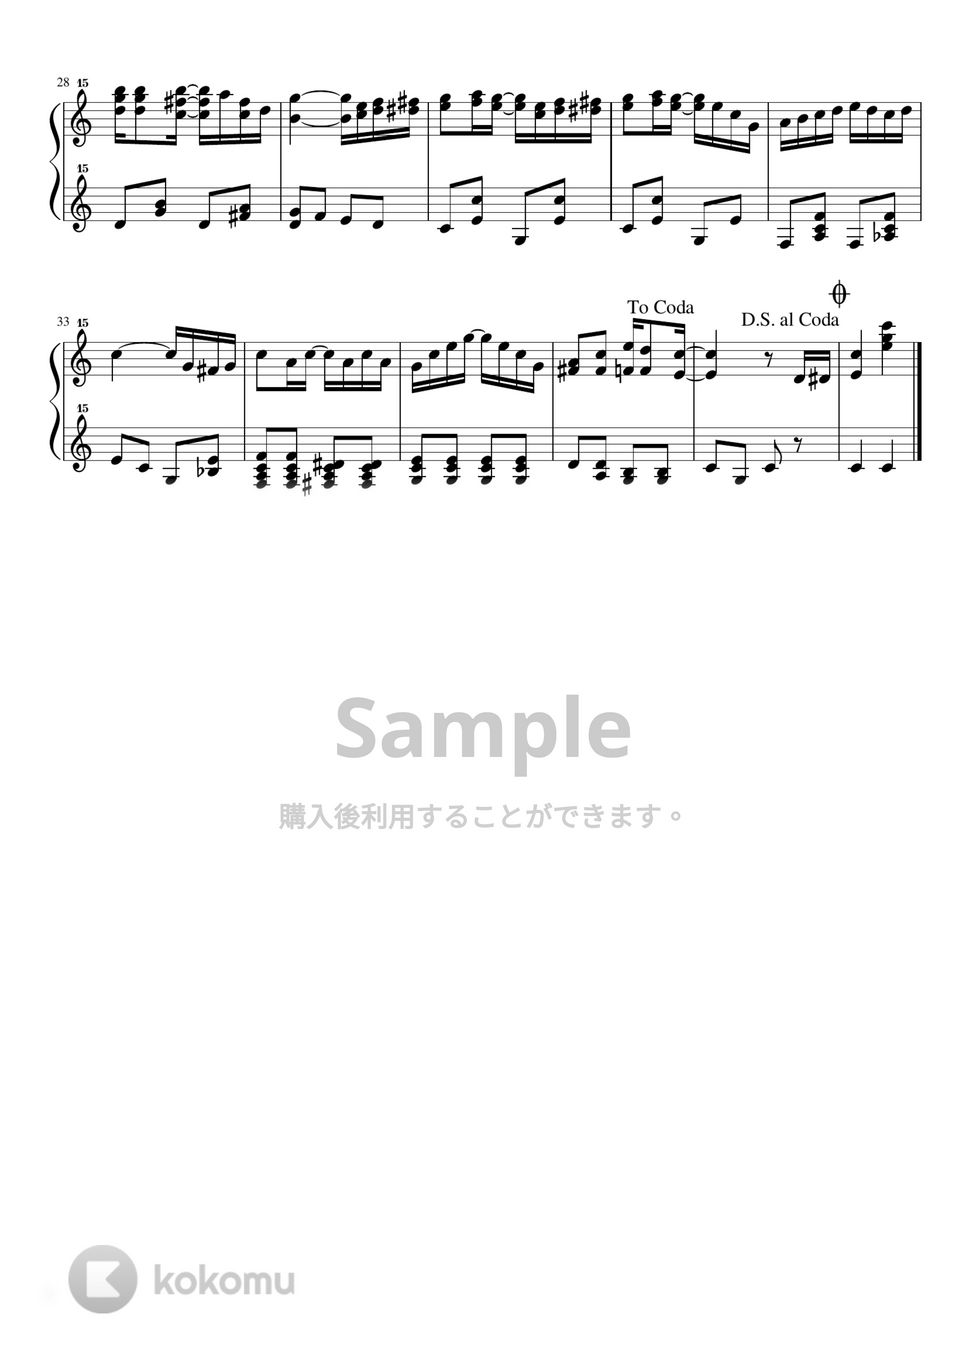 スコット・ジョプリン - ジ・エンターティナー (トイピアノ / クラシック / 32鍵盤) by 川西三裕